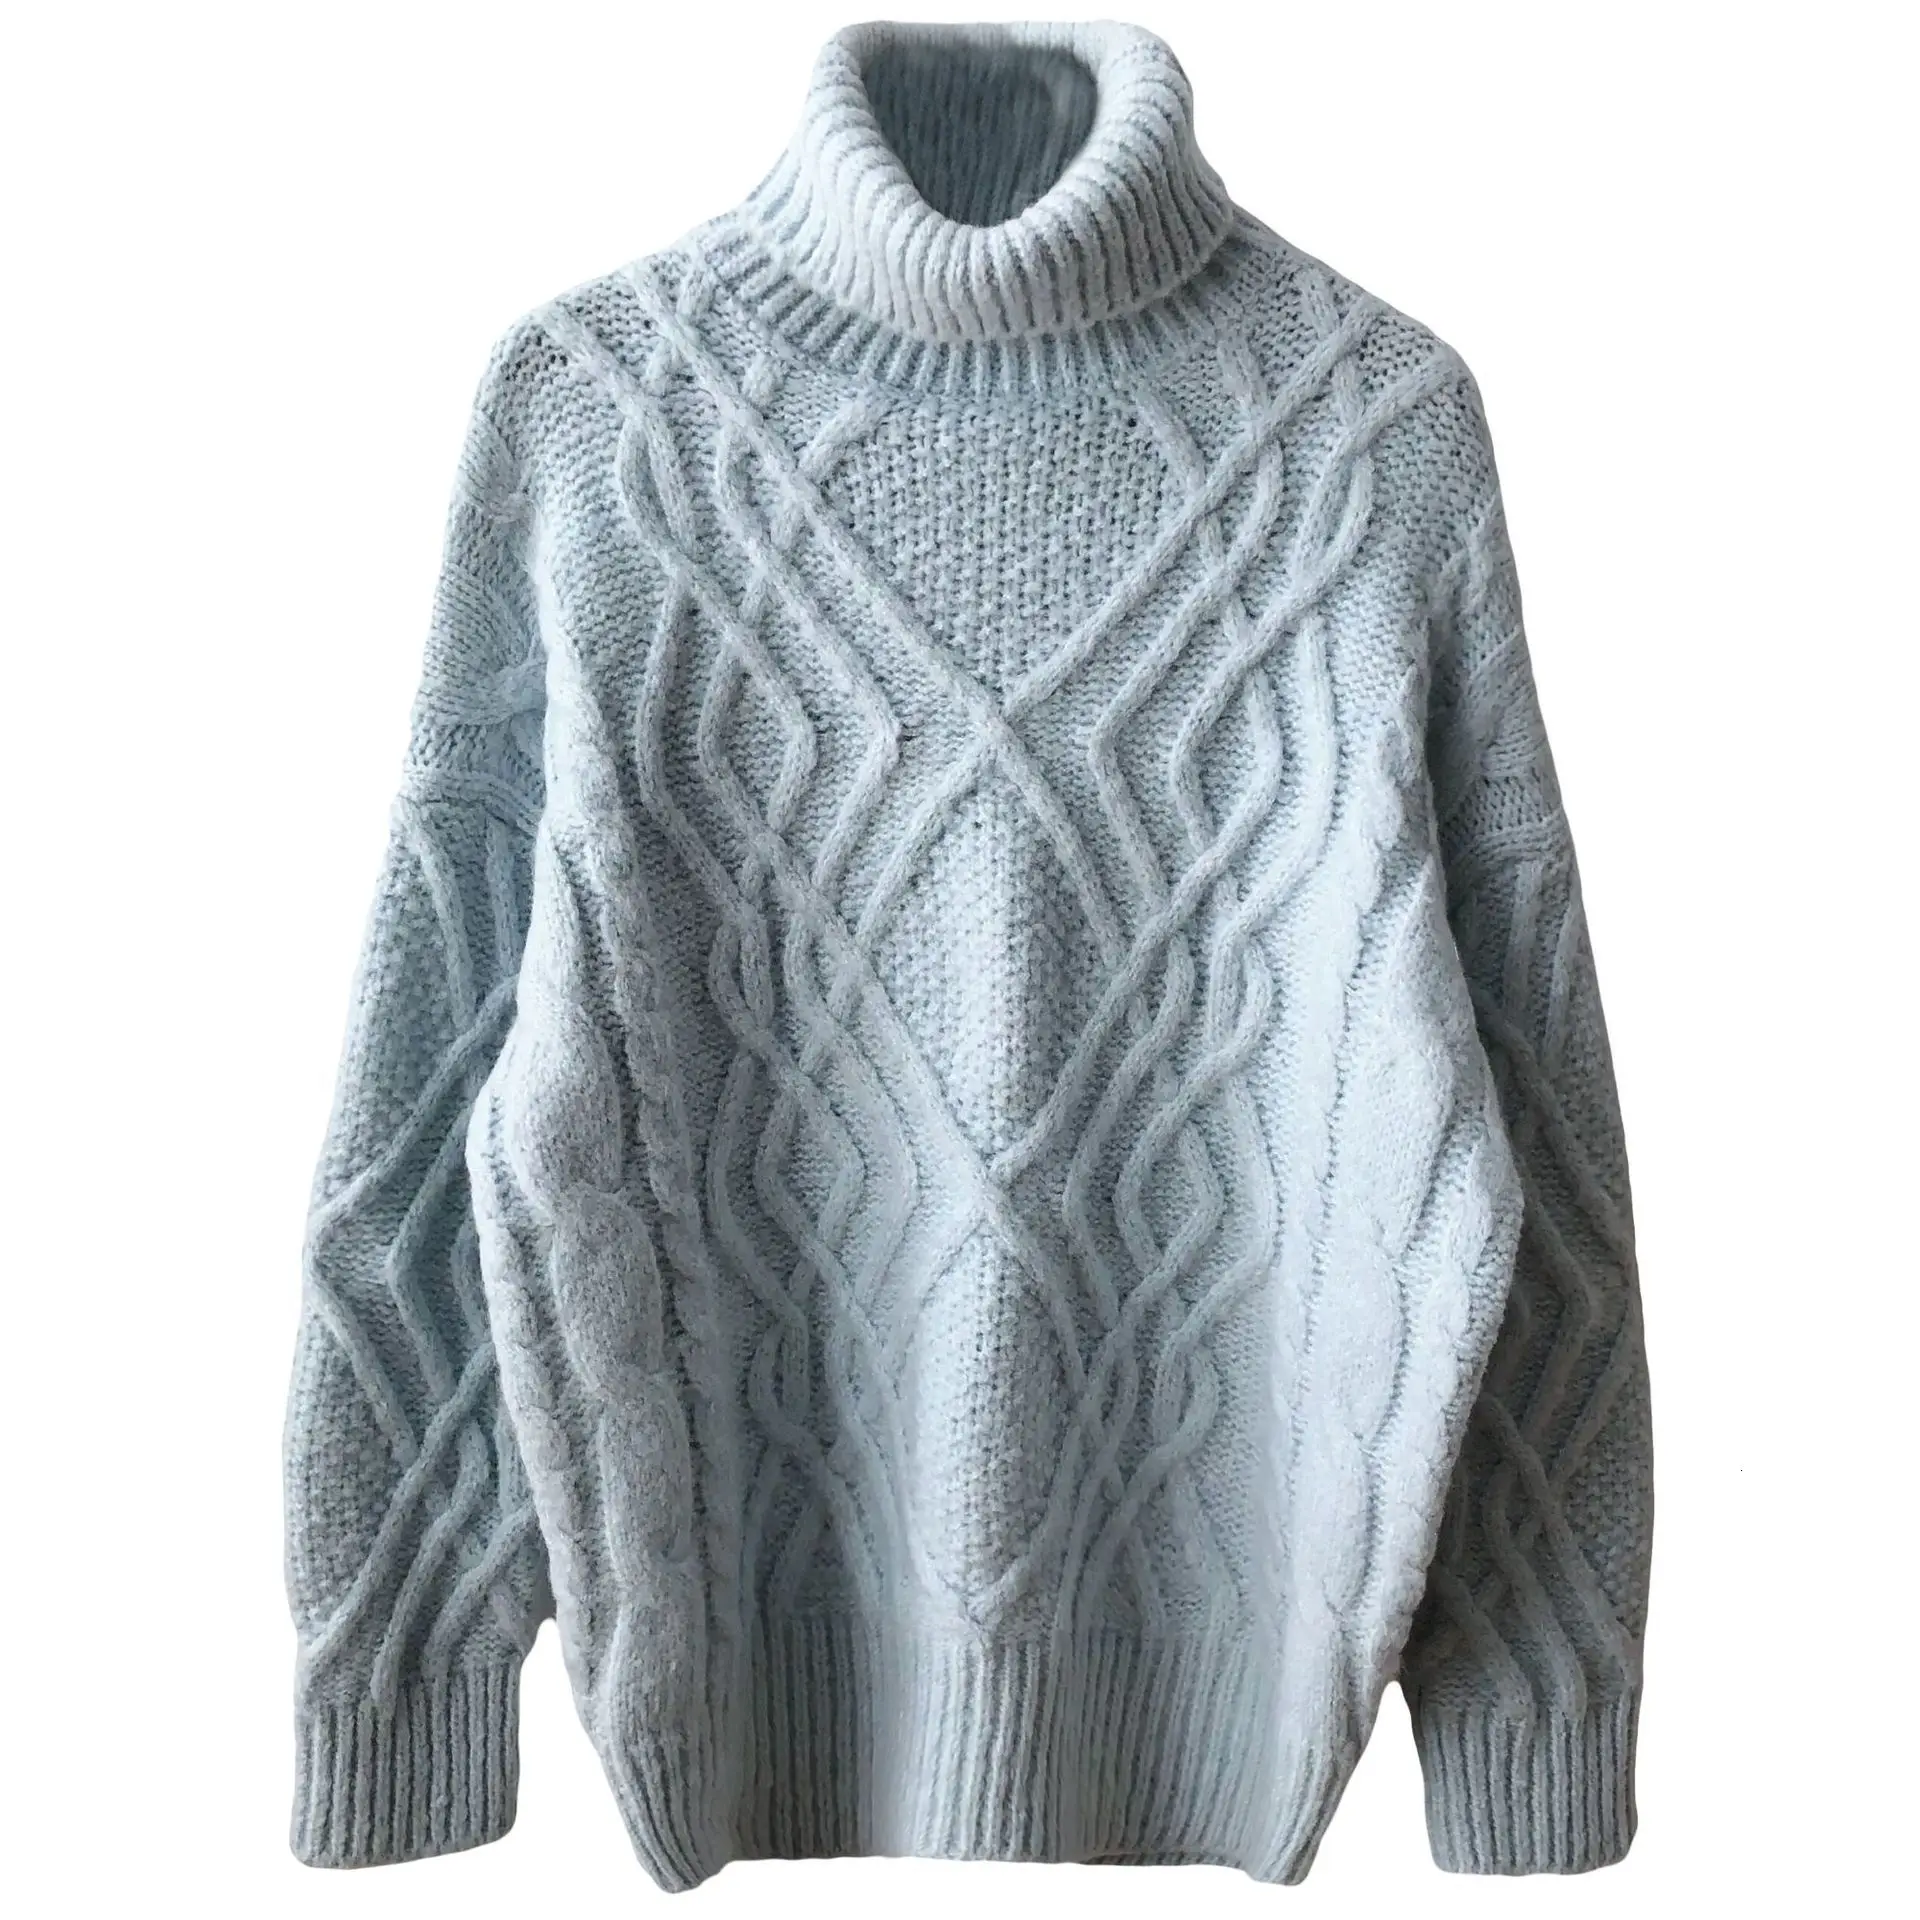 Mooirue, осень, милый свитер, мягкий, голубой, с высоким горлом, с закручивающимся кабелем, свободная, ленивая, утолщенная одежда, с цветами, тонкий свитер